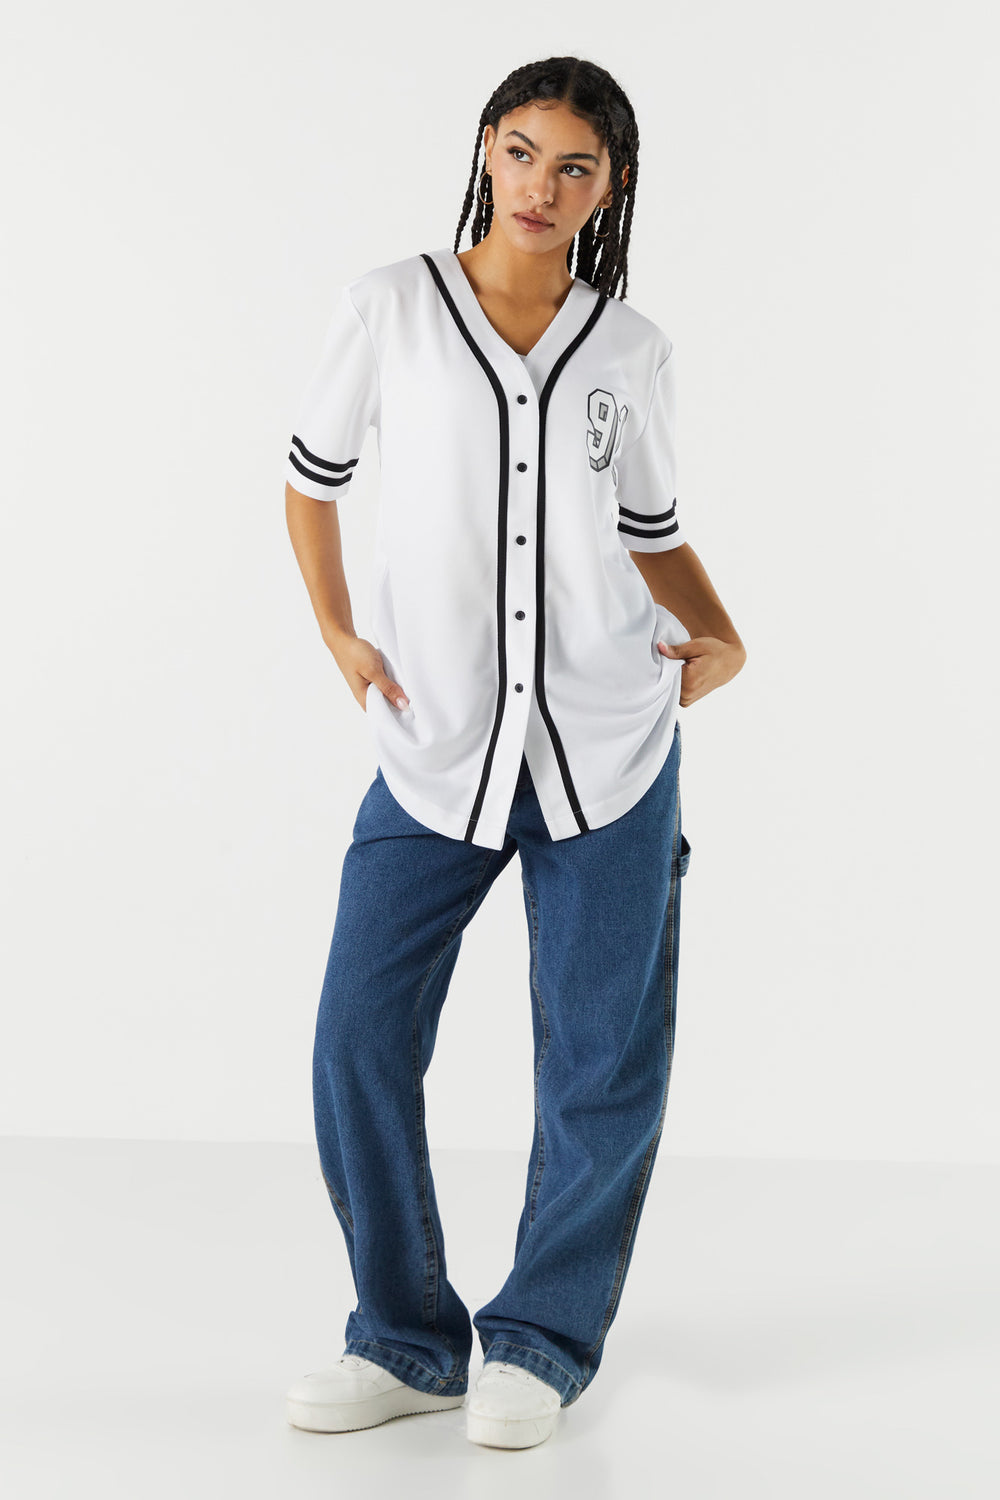 baseball jersey outfit